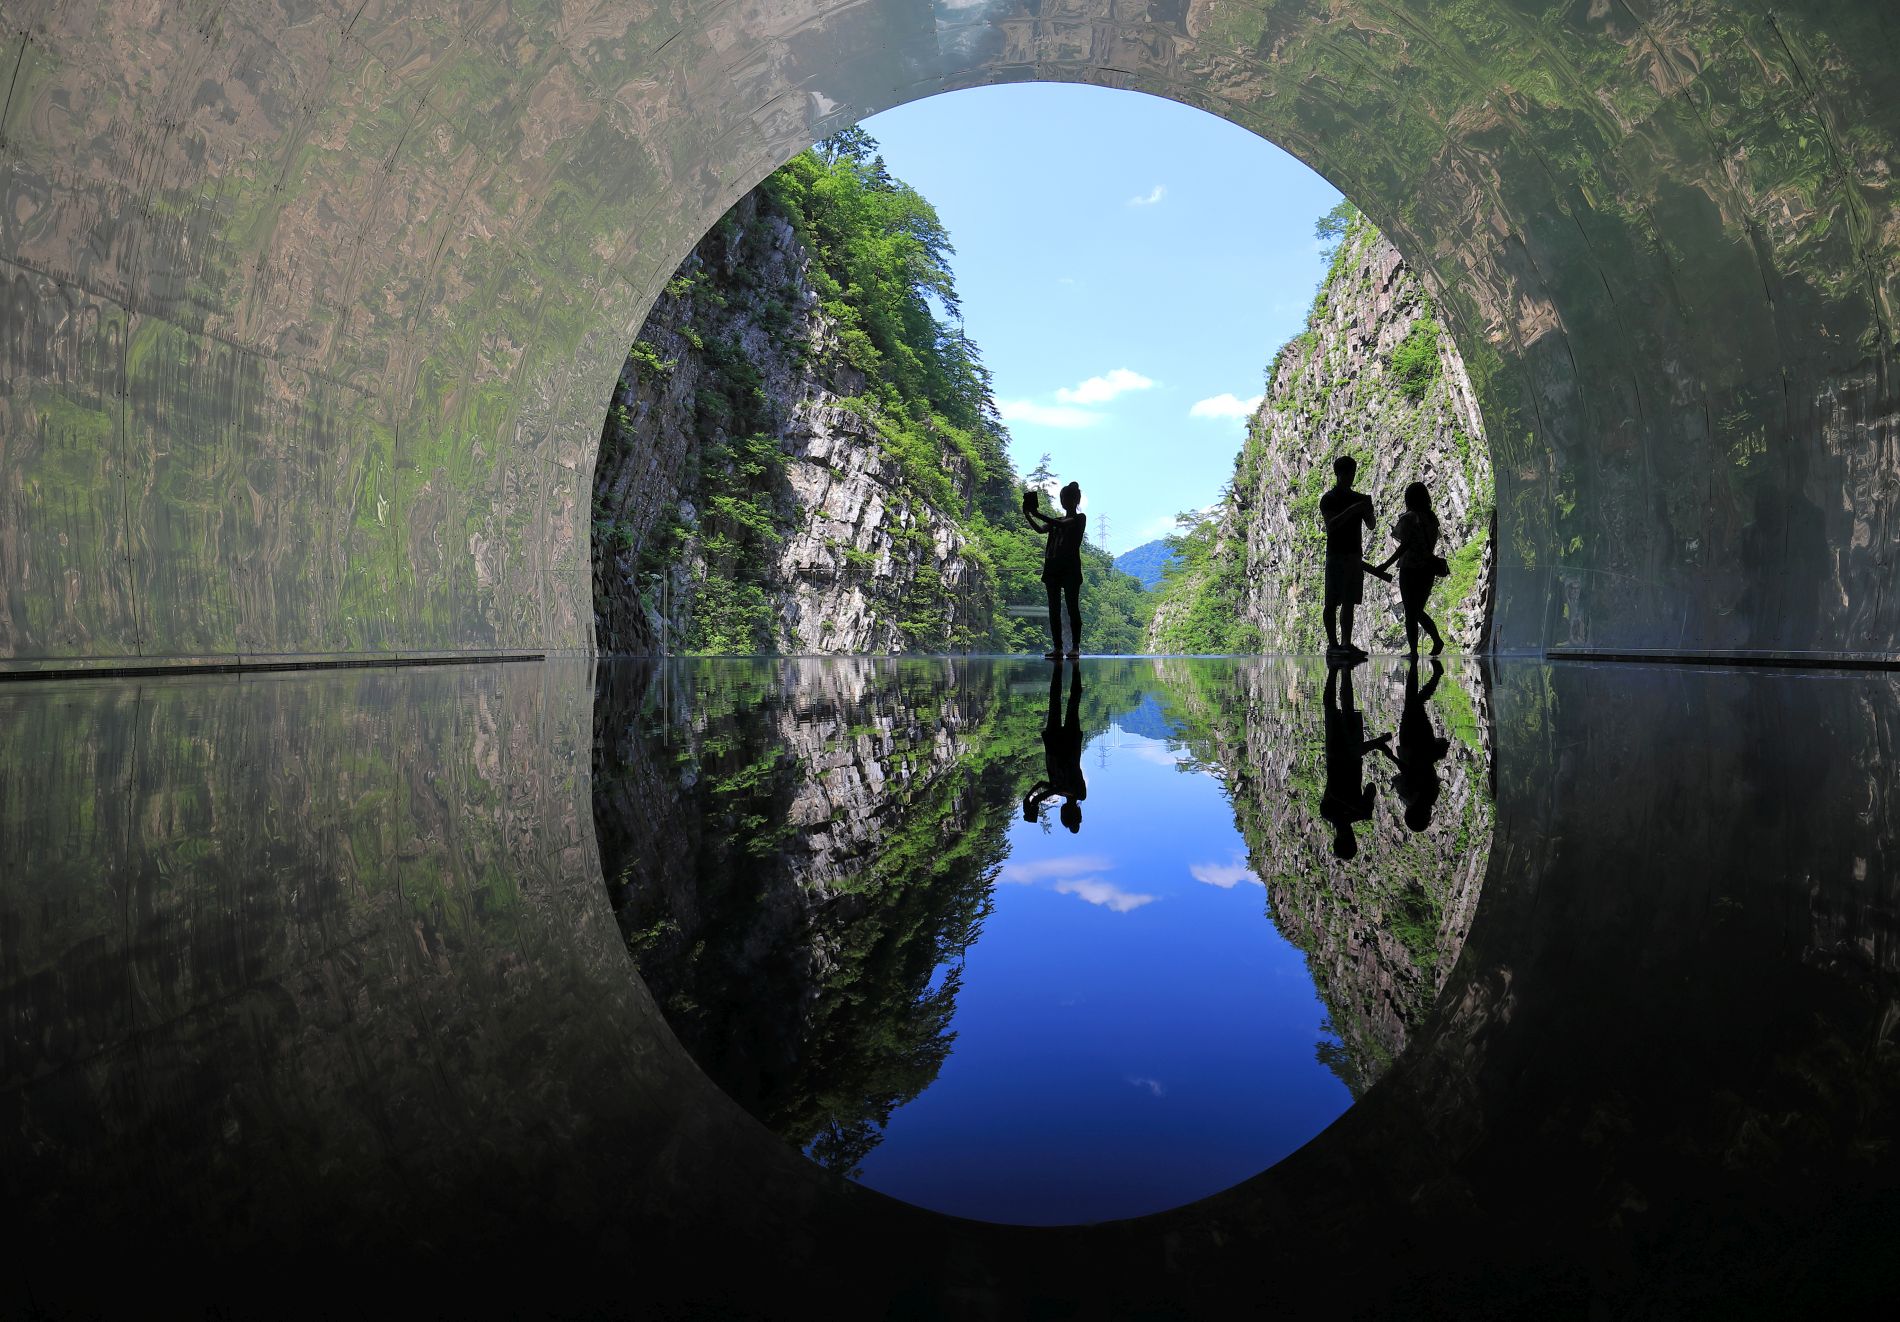 Travel Japan Ancient Scenery Gets New Audiences at Refurbished Kiyotsukyo Gorge Tunnel